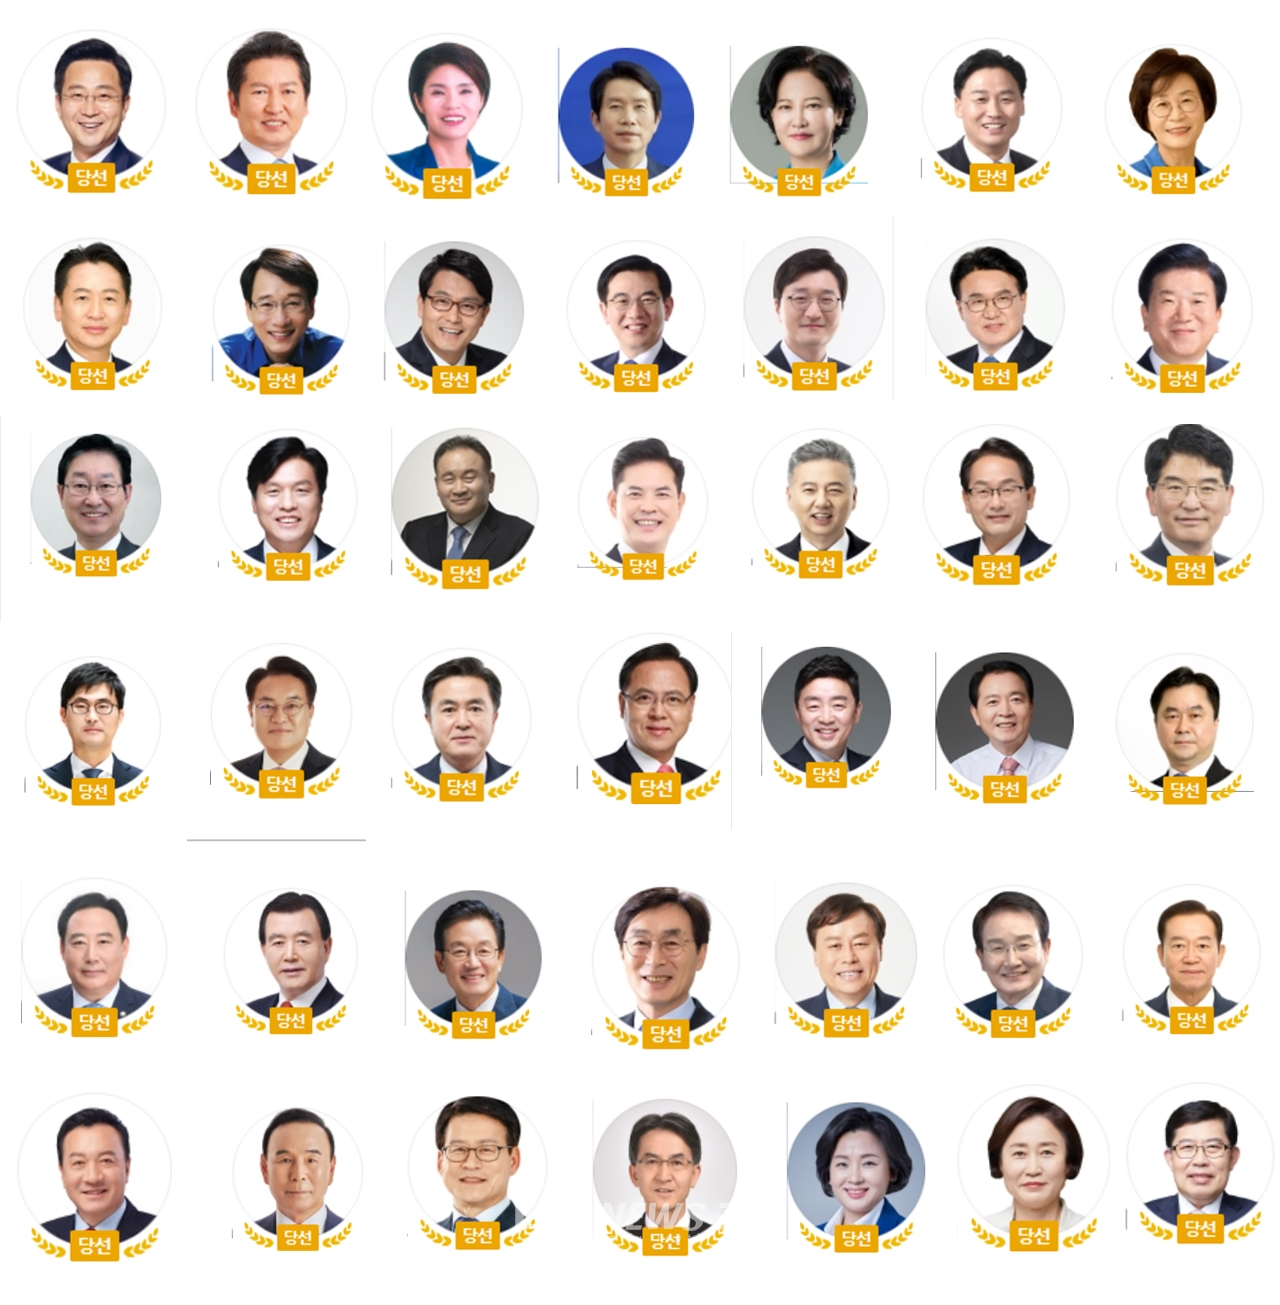 21대 국회의원 당선인 가운데 충청 출신은 지역구와 비례대표를 포함해 총 42명으로 나타났다.